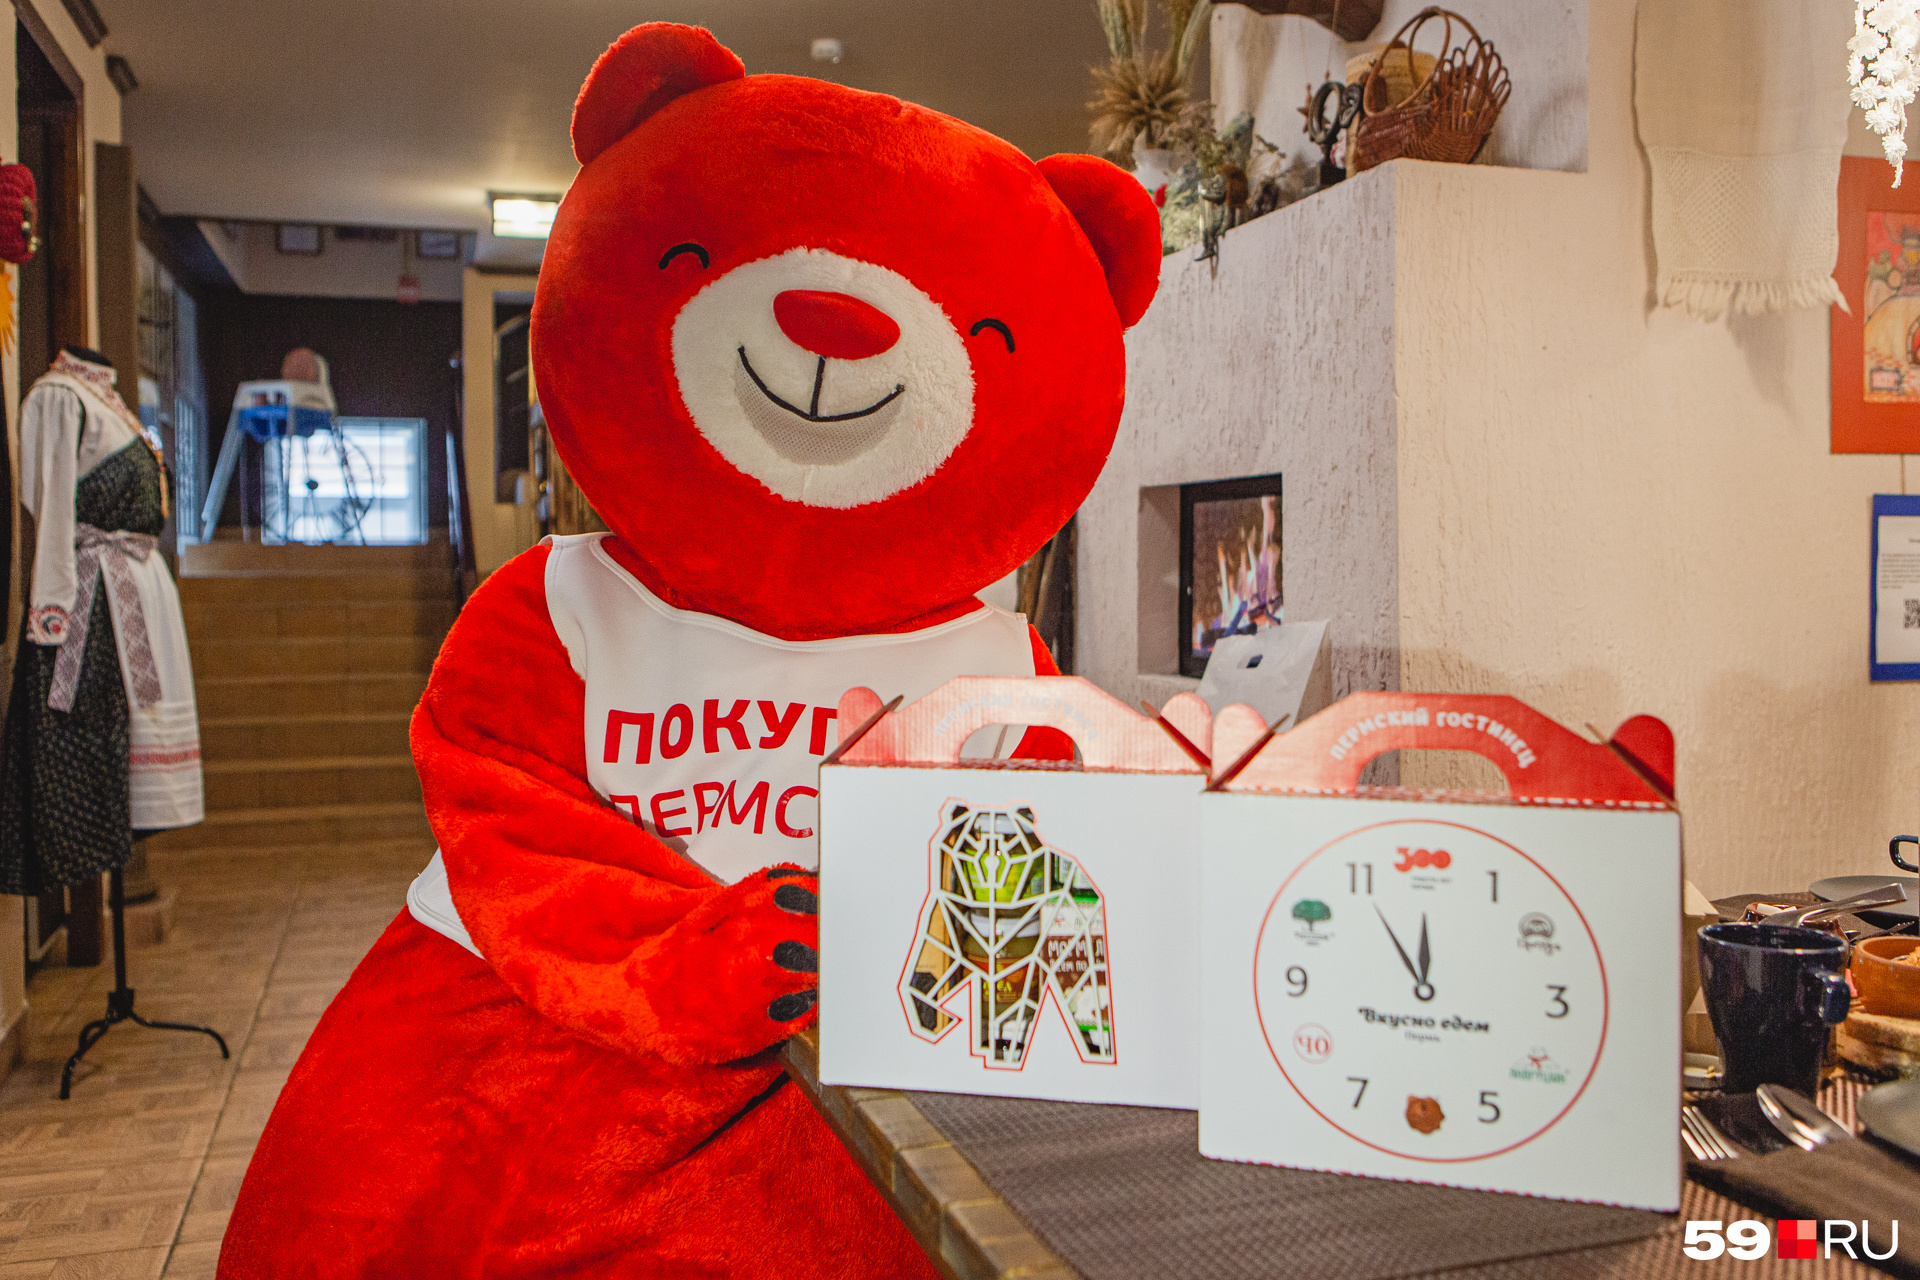 Продукты в наборе — от прикамских компаний, участвующих в проекте «Покупай Пермское», поэтому на презентации можно было увидеть его символ — красного медведя